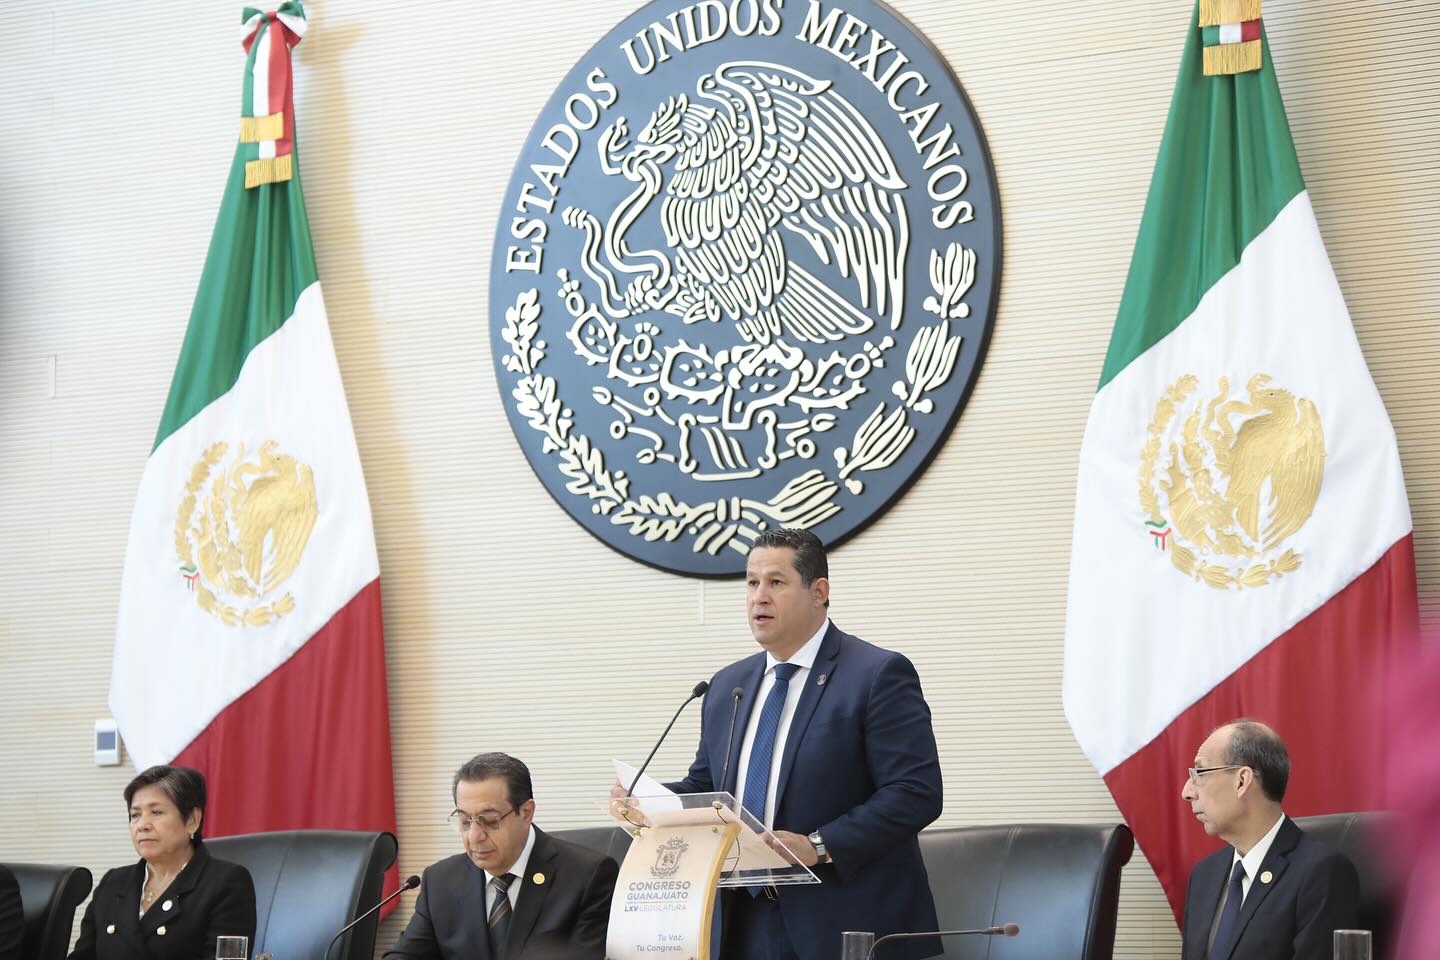 Gobernador Diego Sinhue celebra 200 años de Guanajuato